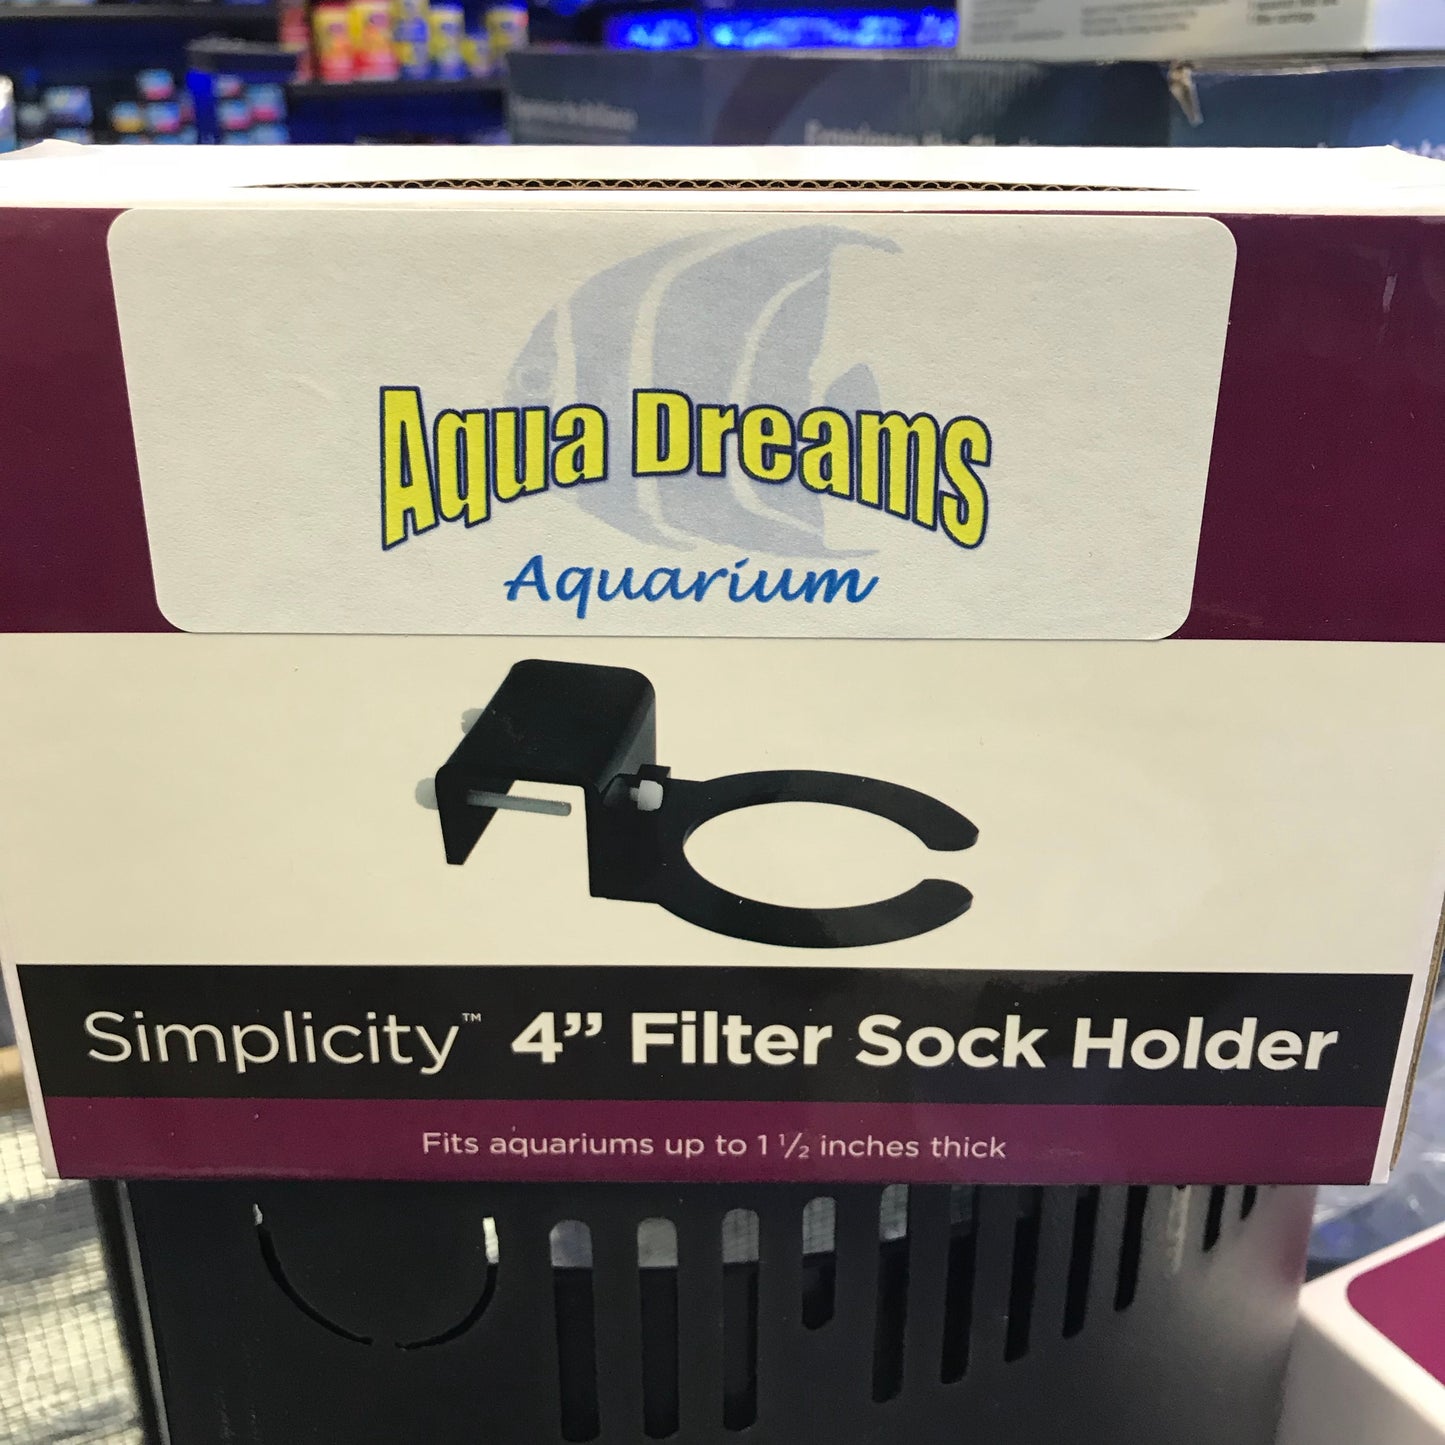 Aqua Dreams Simplicity filter sock holder